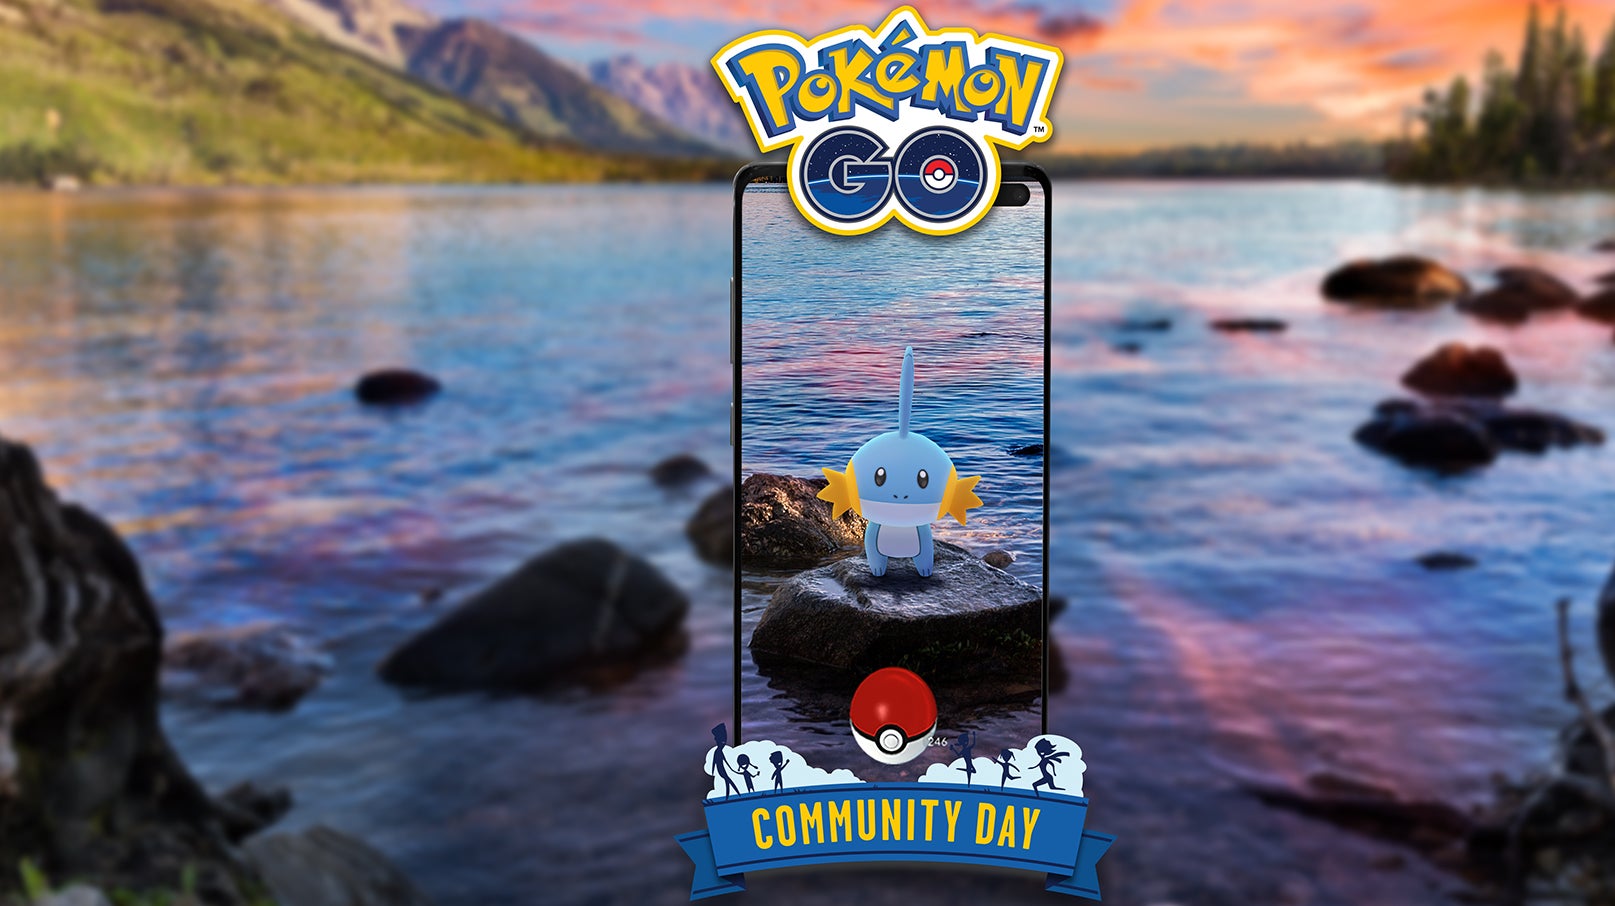 Imagem para Pokémon Go - Dia Comunitário Clássico - Mudkip, Mudkip shiny